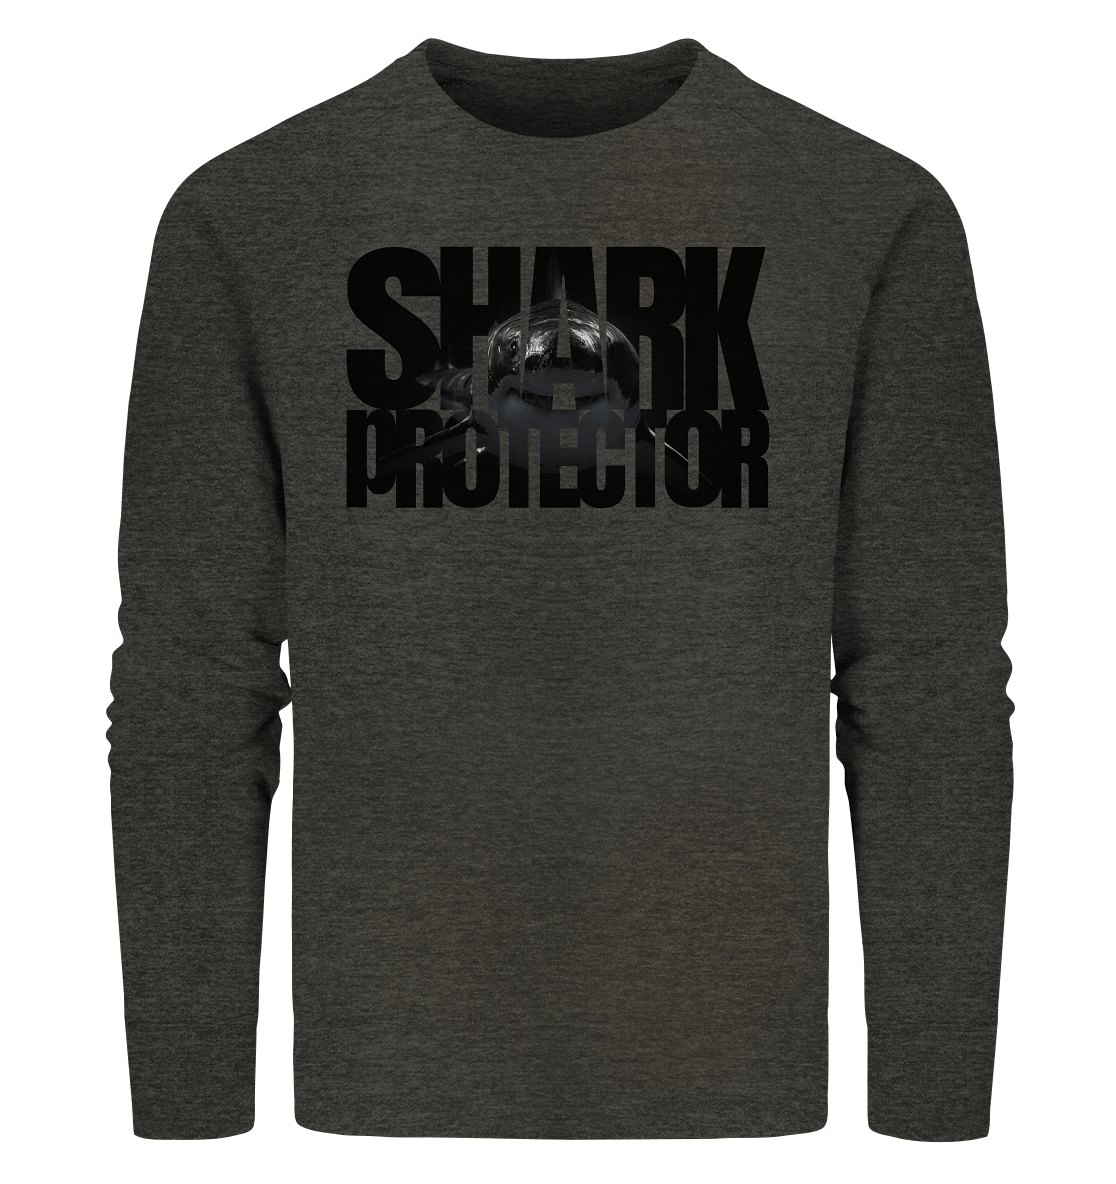 Shark Protector - Organic Sweatshirt